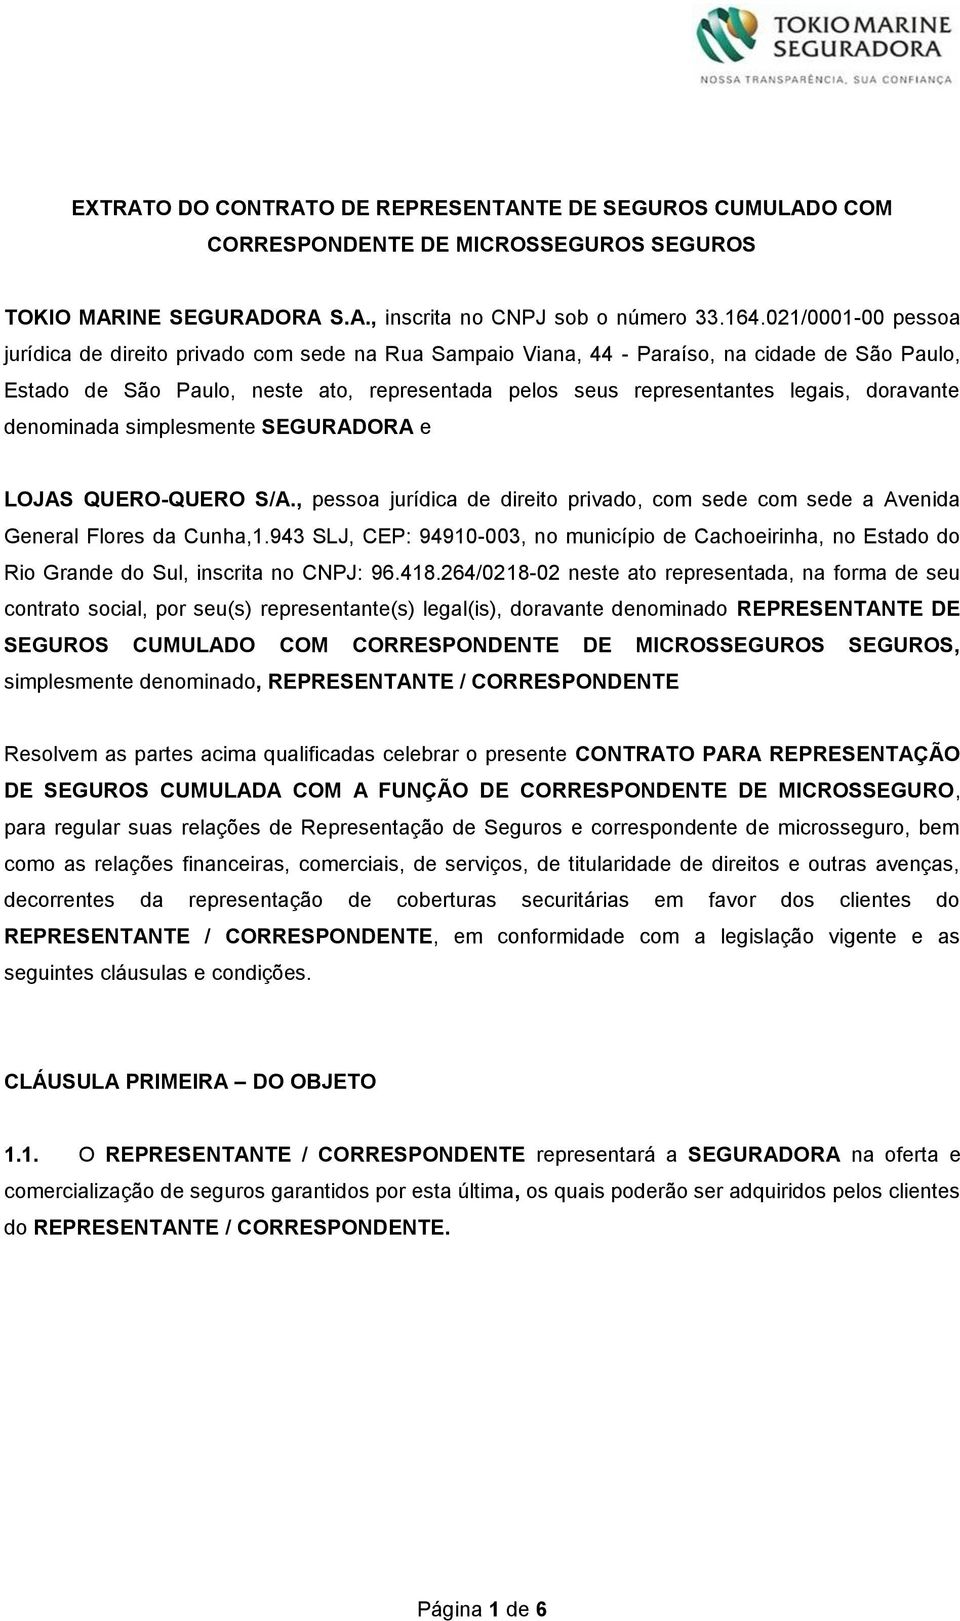 doravante denominada simplesmente SEGURADORA e LOJAS QUERO-QUERO S/A., pessoa jurídica de direito privado, com sede com sede a Avenida General Flores da Cunha,1.